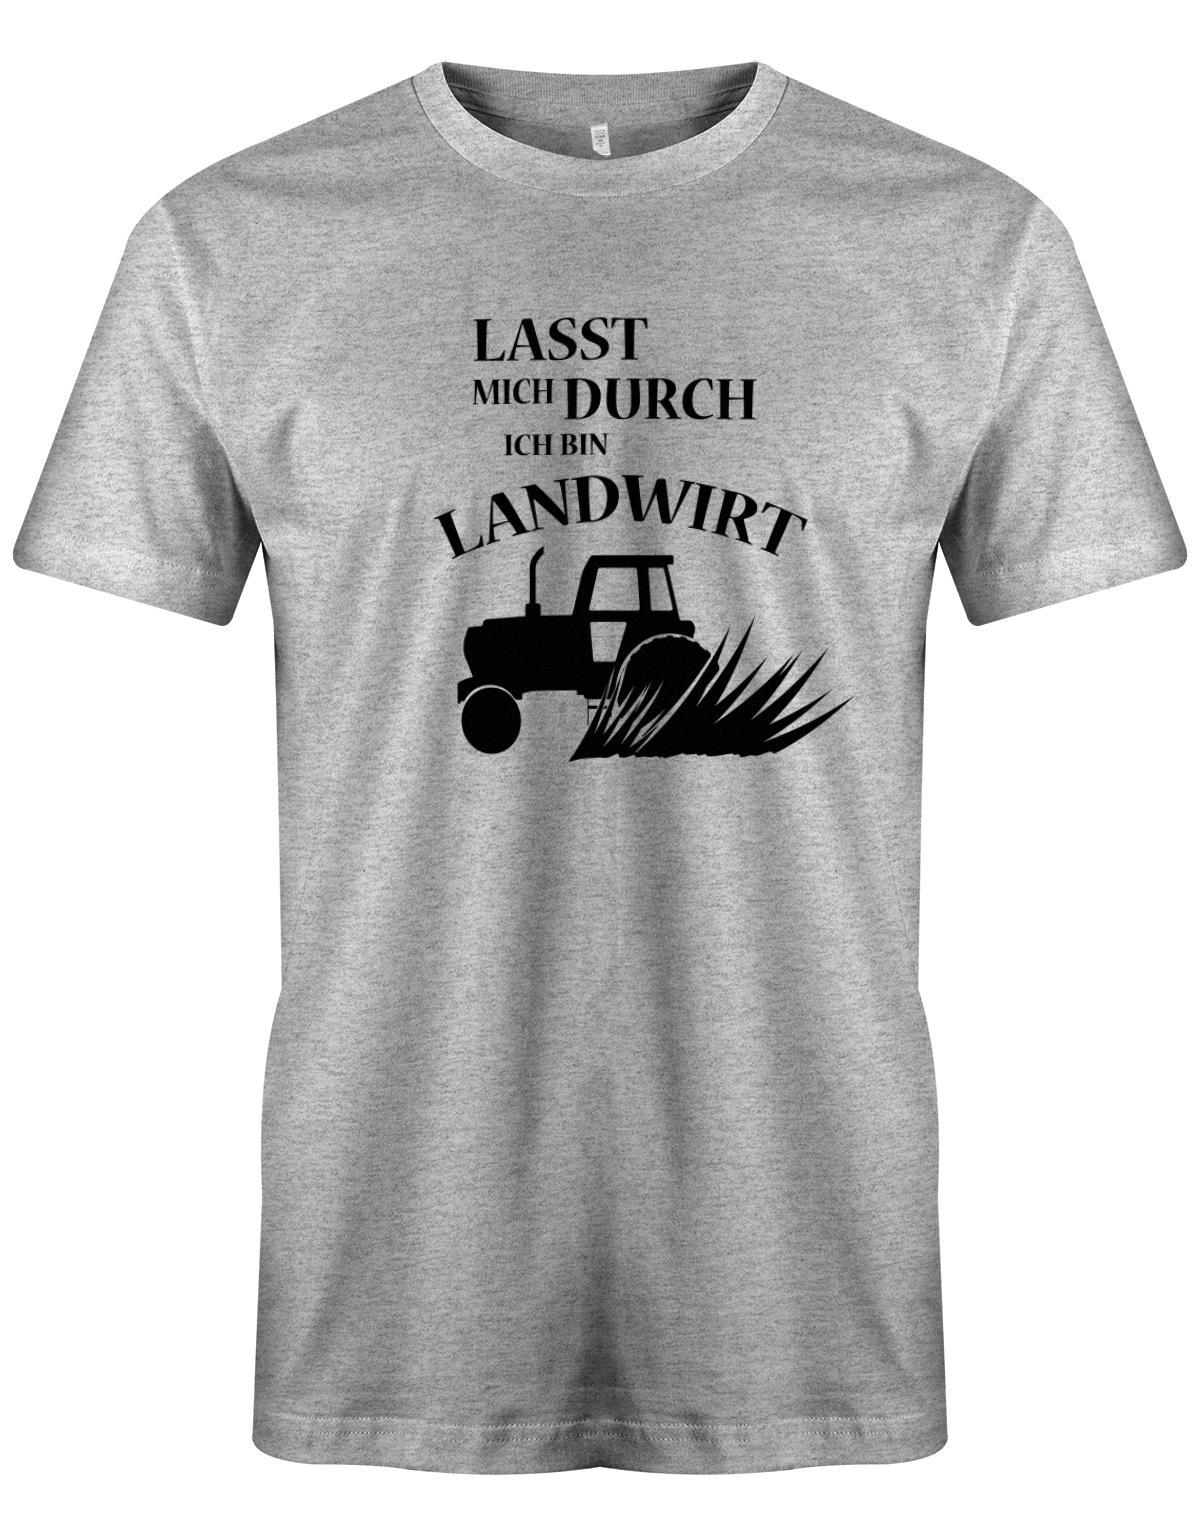 Landwirtschaft Shirt Männer - Lasst mich durch, ich bin Landwirt. Traktor Grau